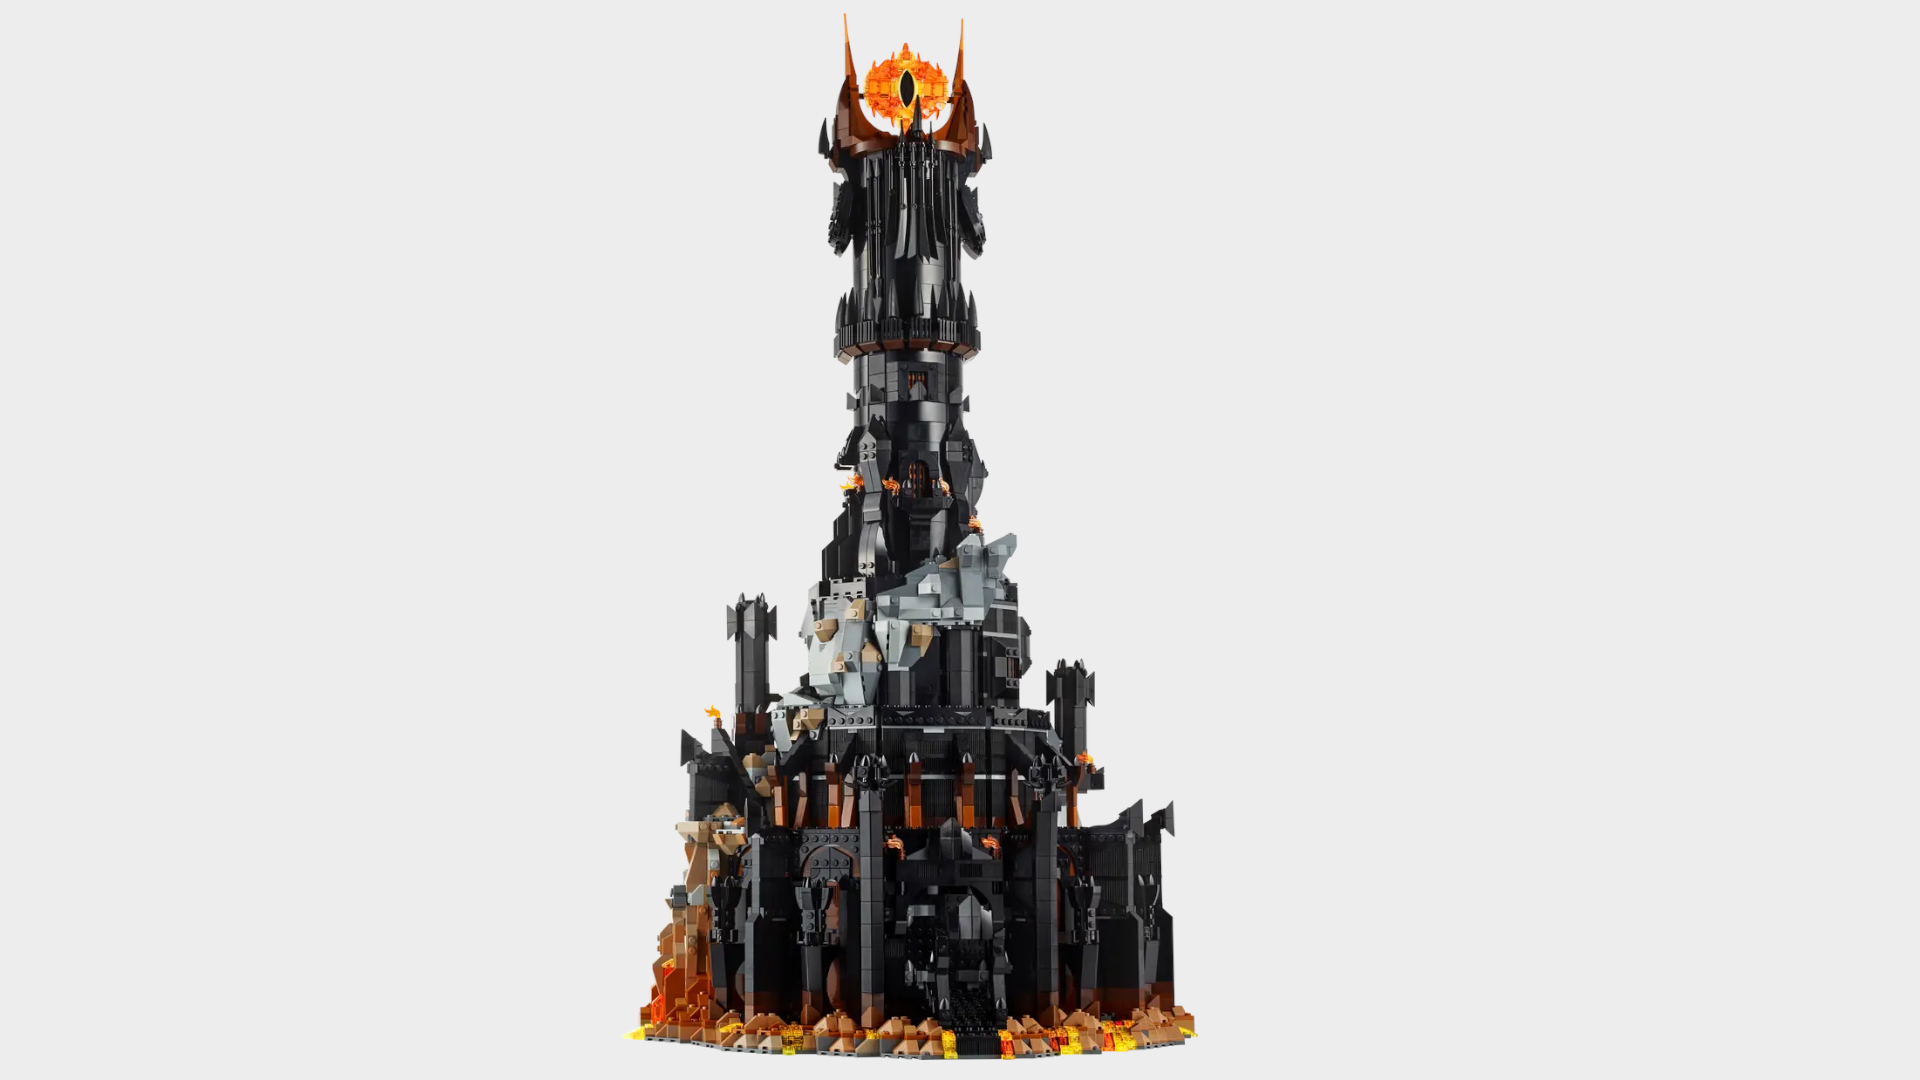 Lego Barad-dur pieces against a plain background